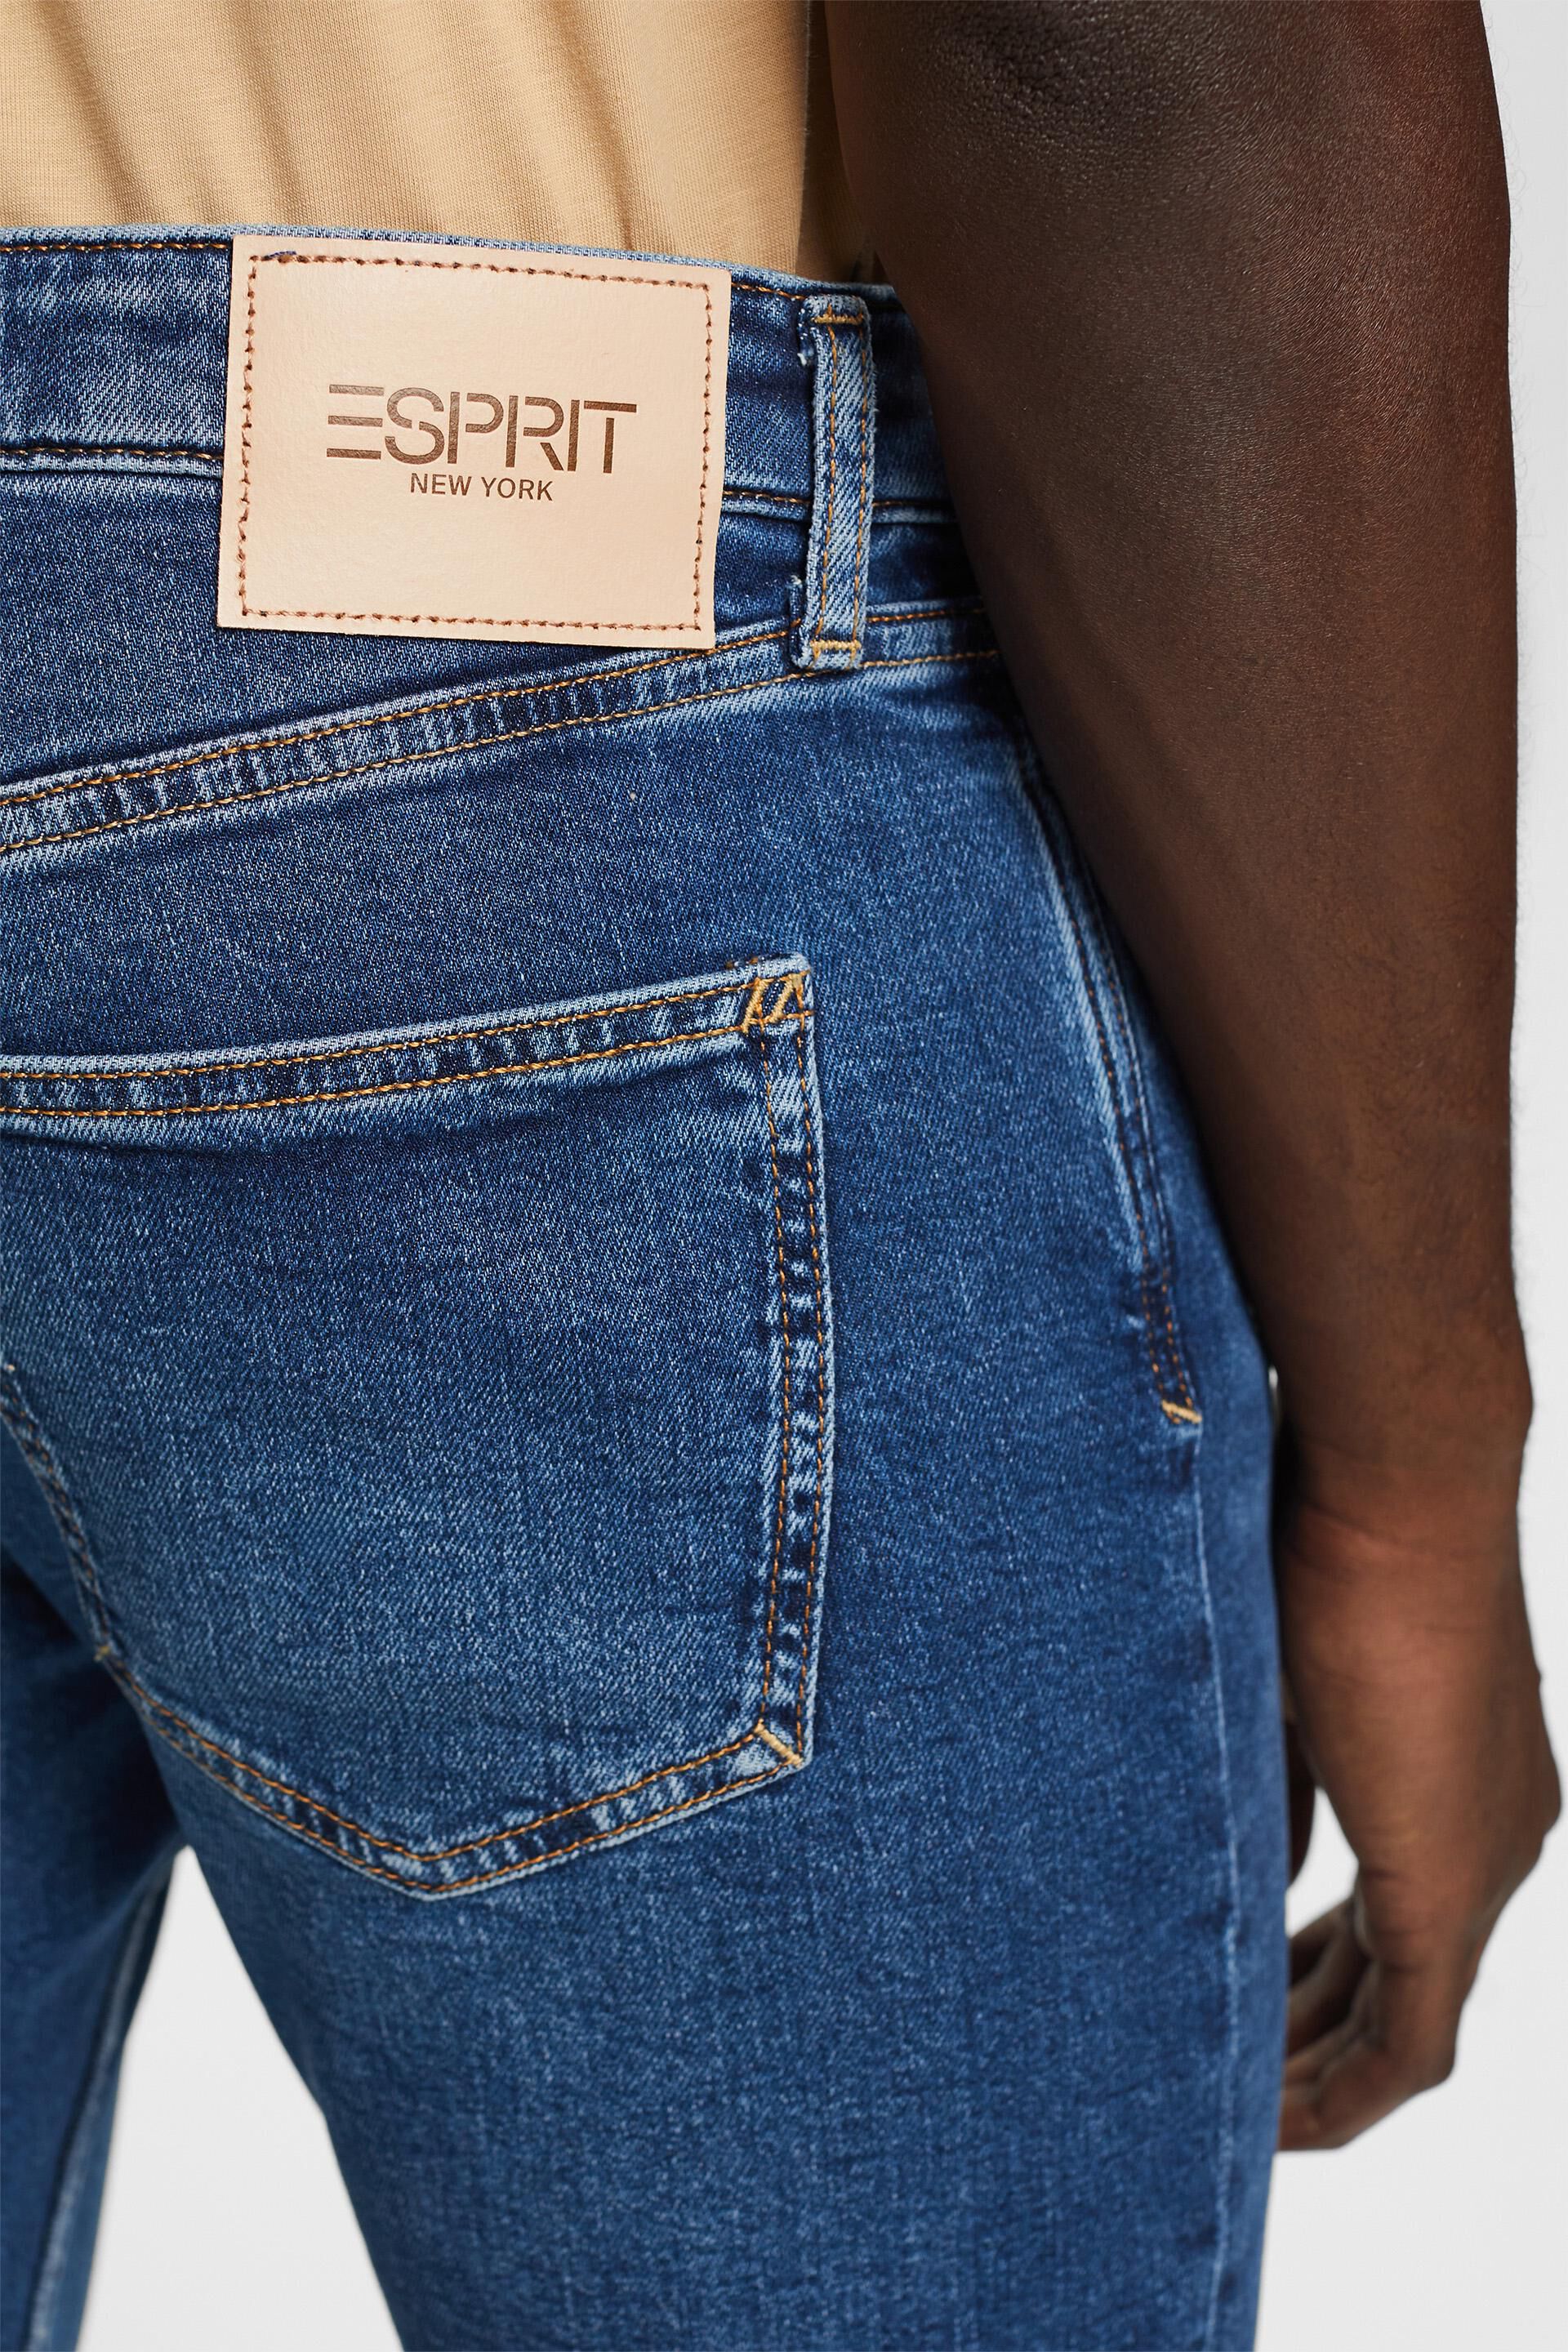 Esprit Schmal Baumwolle aus Jeans zulaufende recycelter